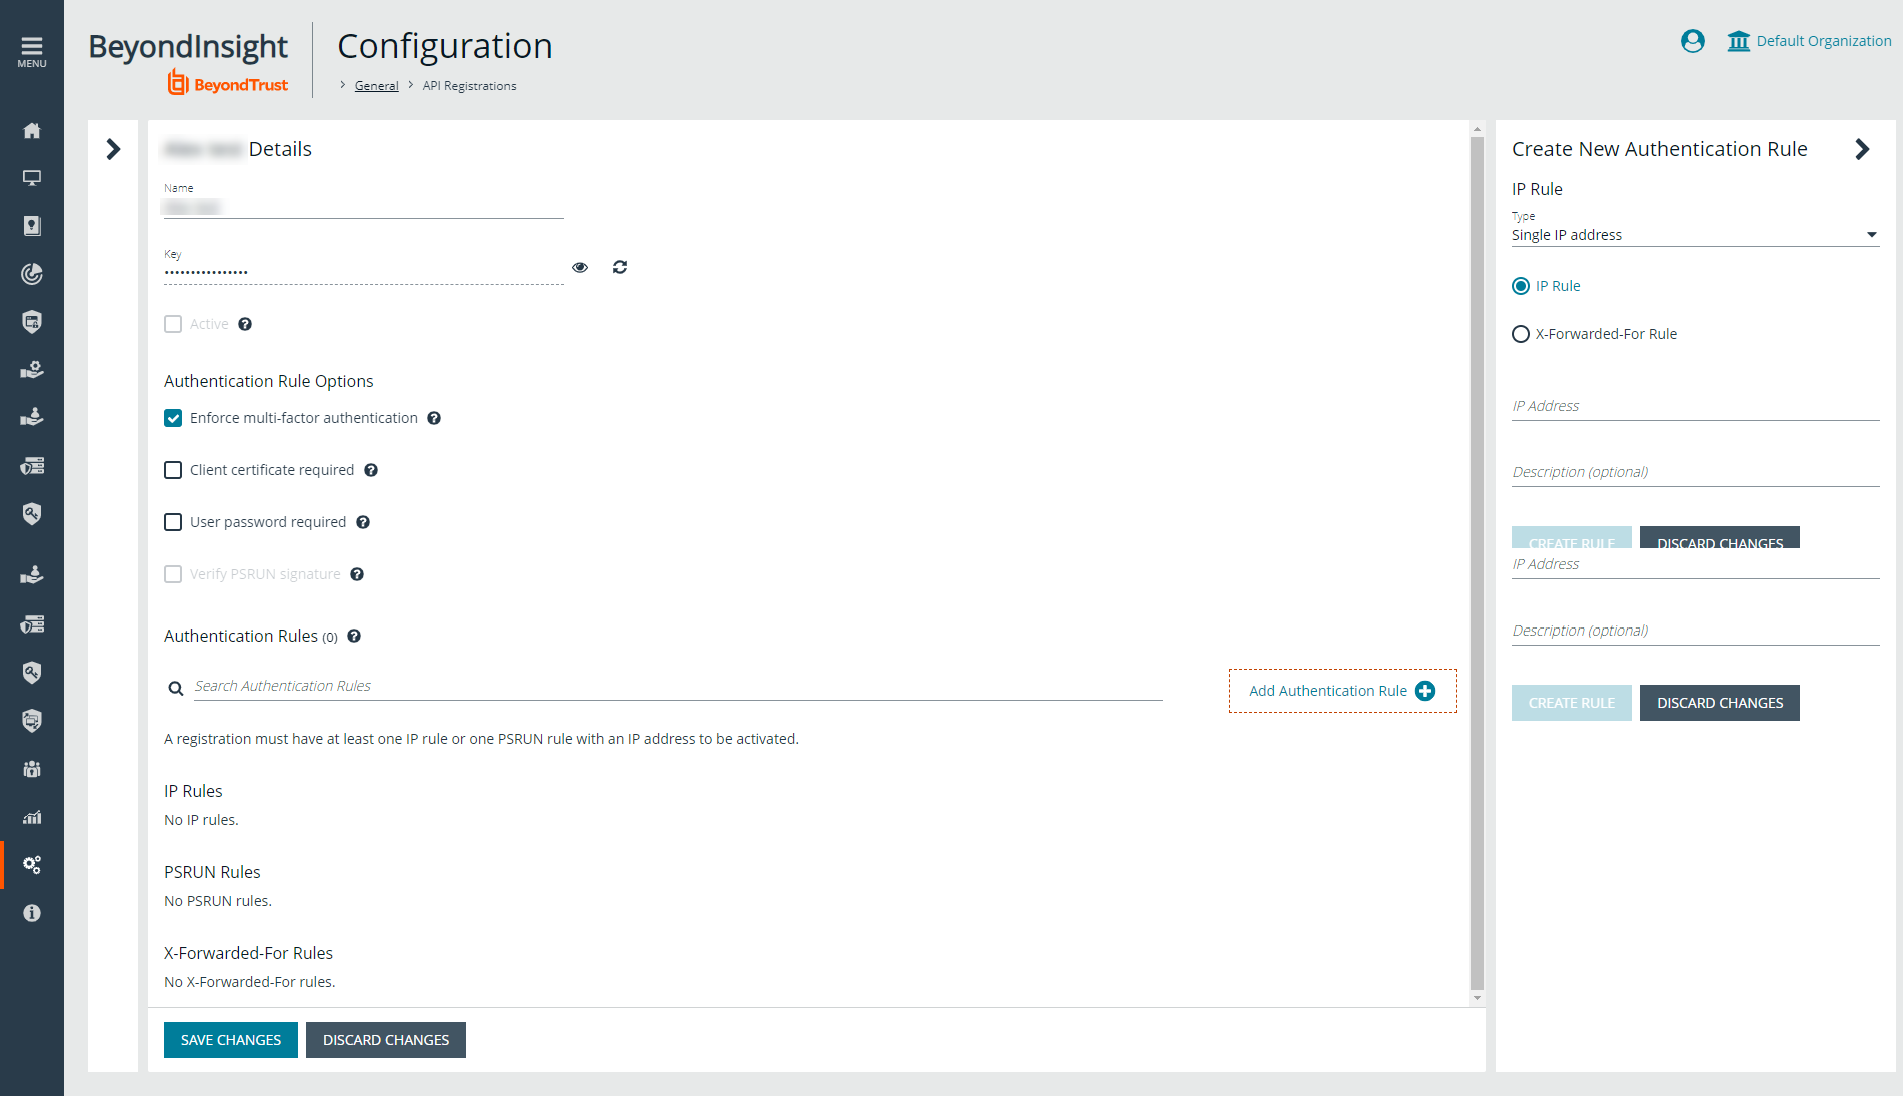 Configuration > General > API Registrations